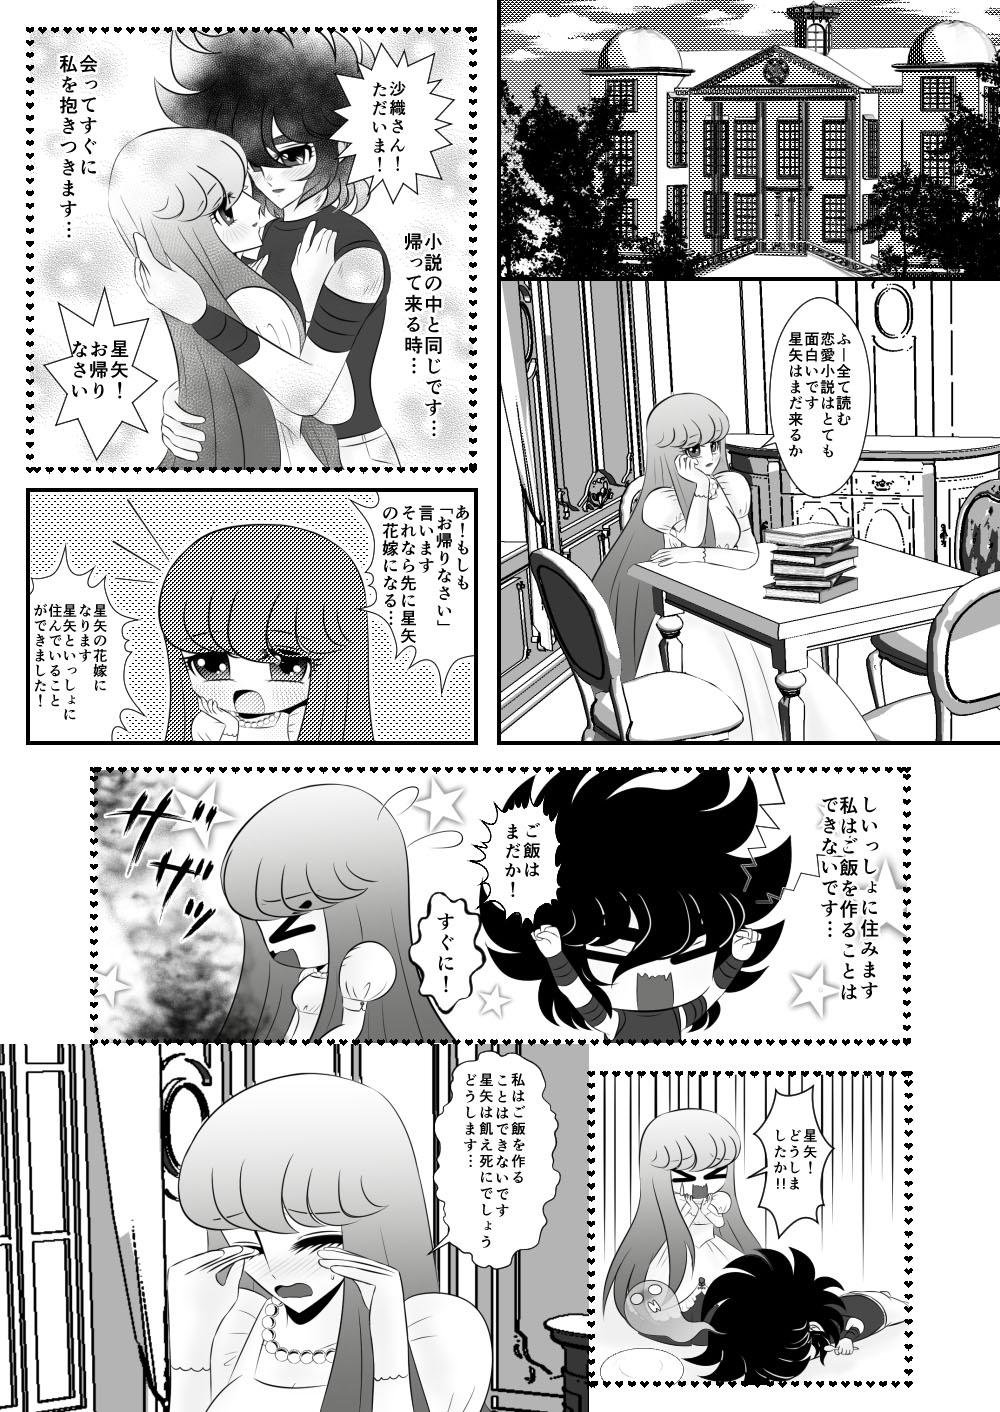 Nerd [Karin] Seiya x Saori - [R-18] 初夜(Saint Seiya Omega) - Saint seiya Blowjob Porn - Page 2